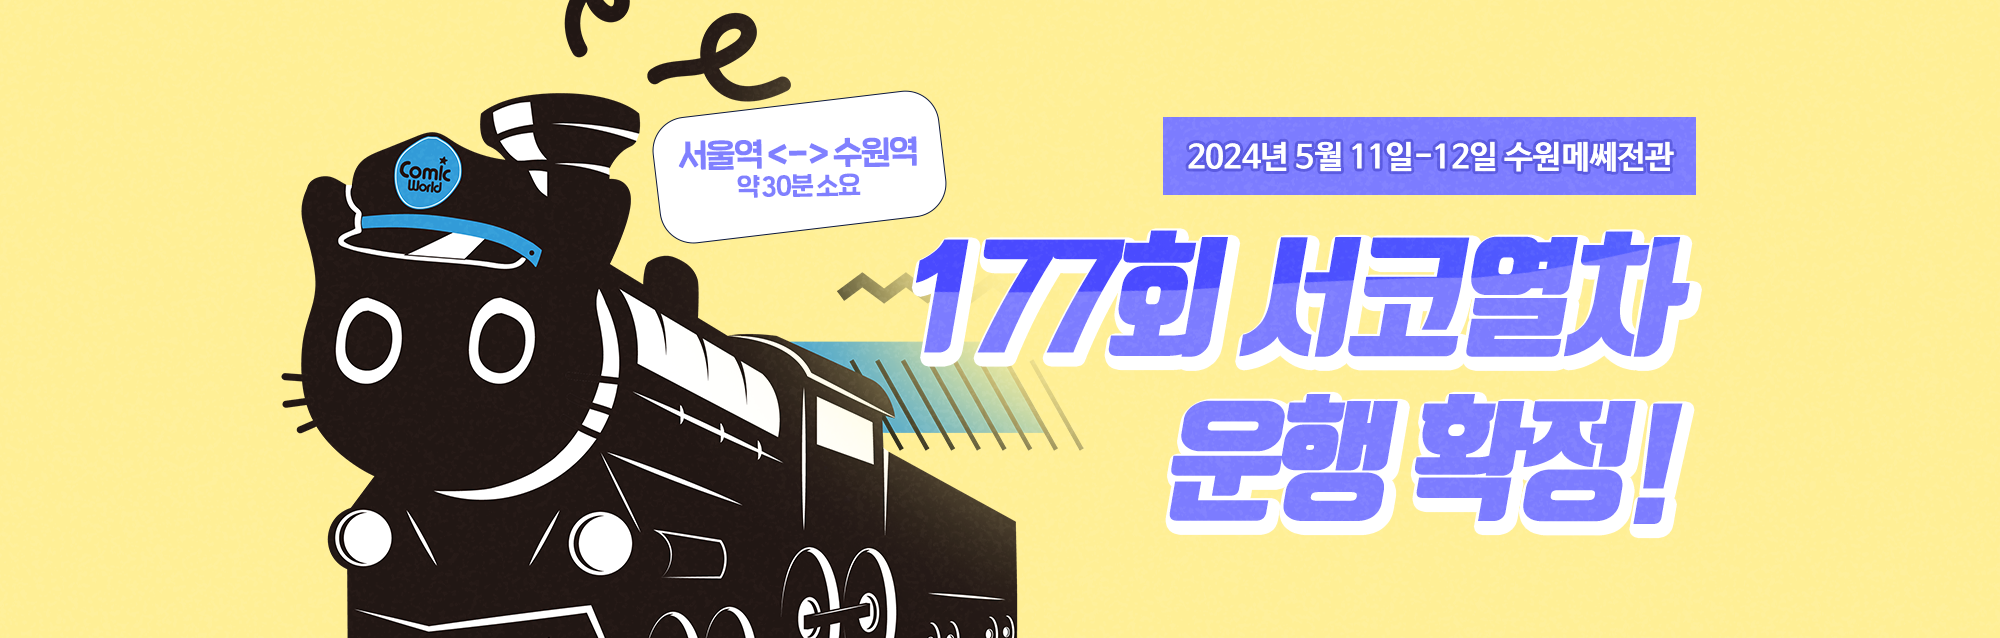 177회 서울코믹월드 서코 열차 확정